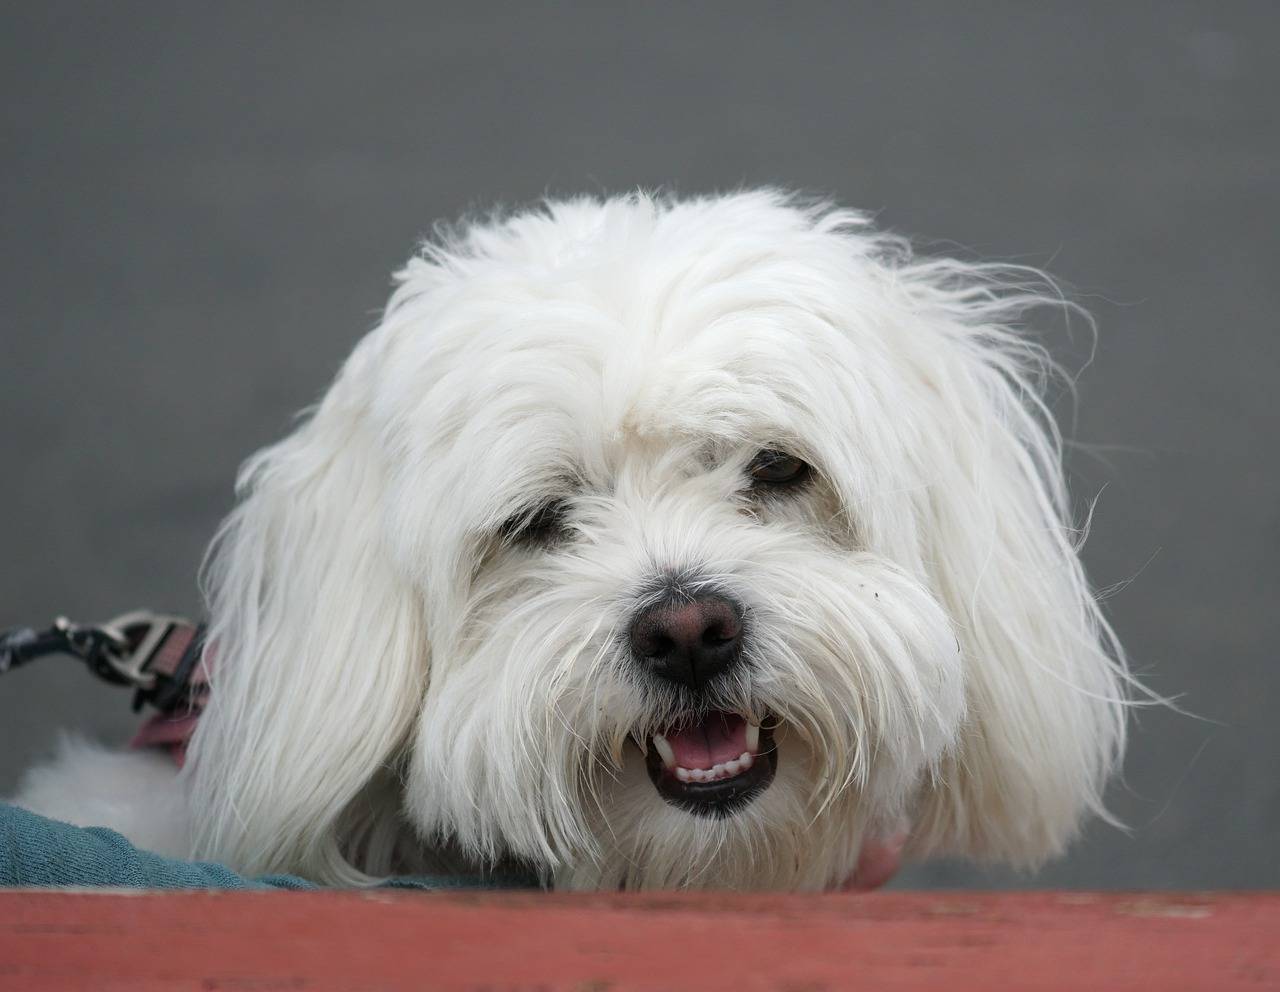 Бишоны: гаванский хаванез, мадагаскарский котон-де-тулеар, лион – он же левхен или малая львиная собака, характеристики взрослого фризе и других мини пород, их фото